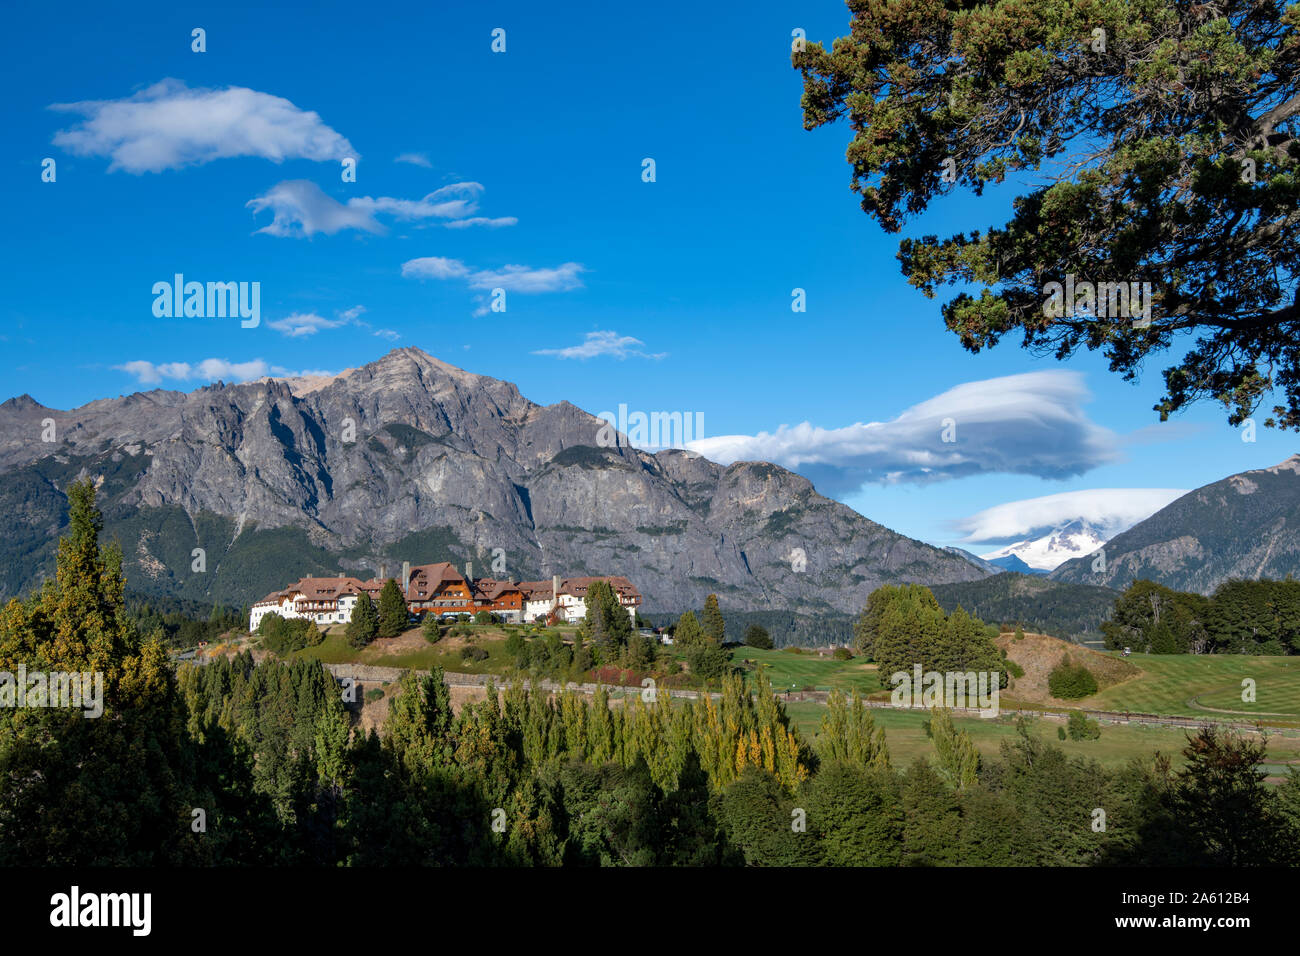 Llao Llao Hotel situé à l'encontre de montagne, Bariloche, Patagonie, Argentine, Amérique du Sud Banque D'Images